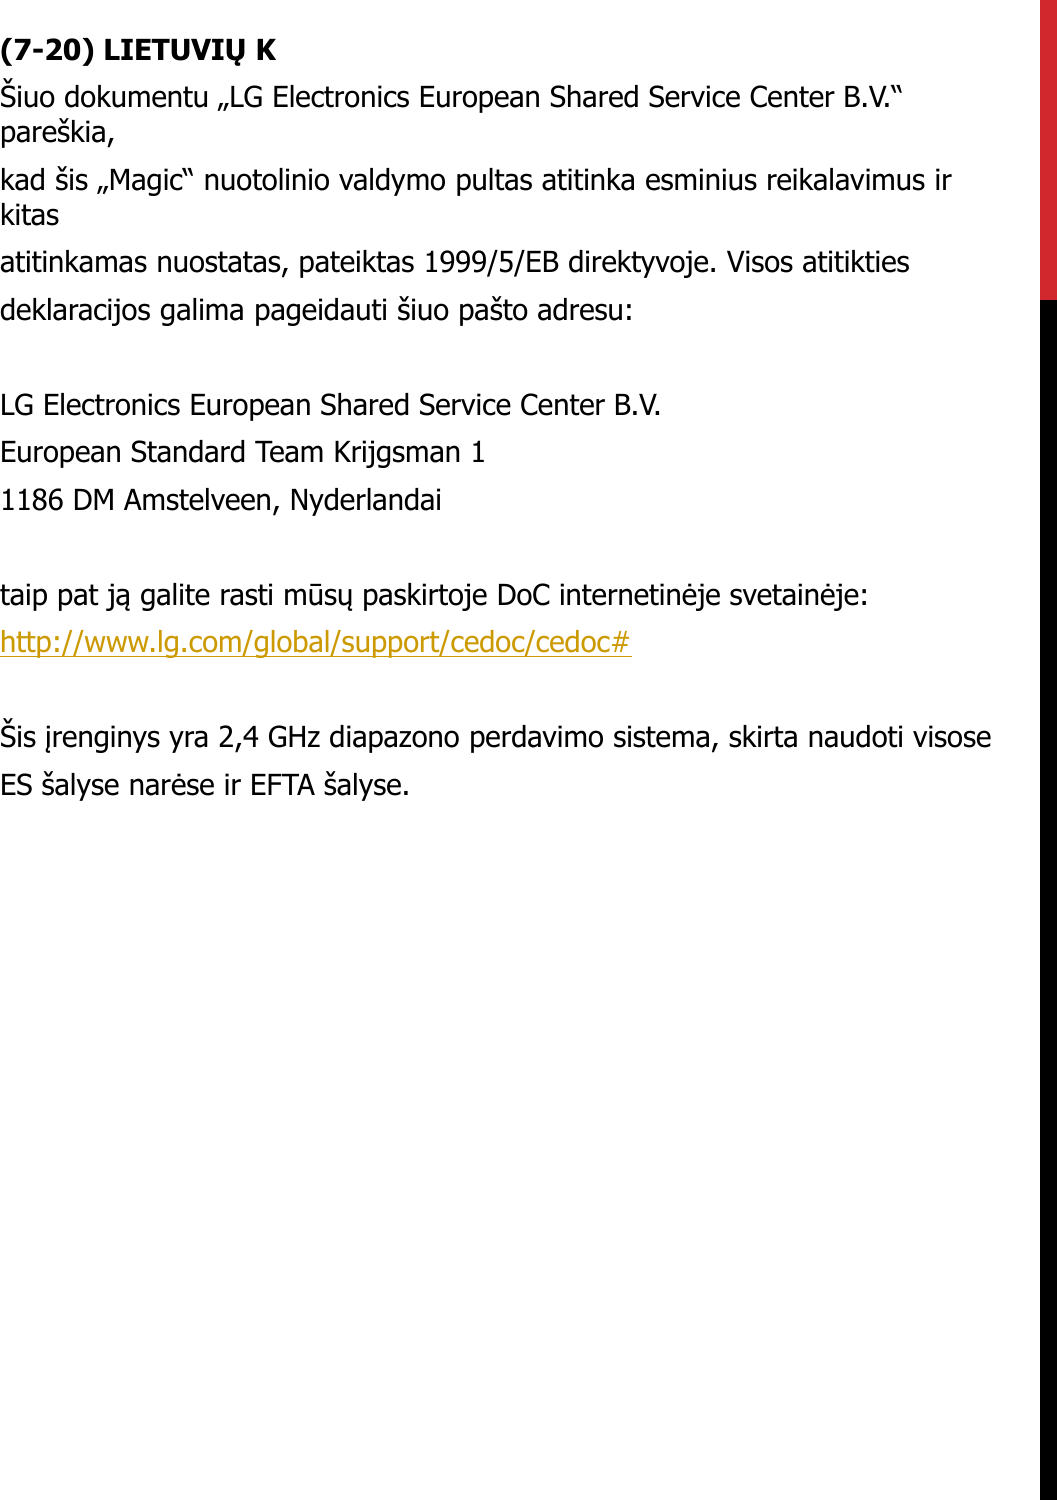 (7-20) LIETUVIŲ KŠiuo dokumentu „LG Electronics European Shared Service Center B.V.“ pareškia,kad šis „Magic“ nuotolinio valdymo pultas atitinka esminius reikalavimus irkitasatitinkamas nuostatas, pateiktas 1999/5/EB direktyvoje. Visos atitiktiesdeklaracijos galima pageidauti šiuo pašto adresu:LG Electronics European Shared Service Center B.V.European Standard Team Krijgsman 11186 DM Amstelveen, Nyderlandaitaip pat ją galite rasti mūsų paskirtoje DoC internetinėje svetainėje:http://www.lg.com/global/support/cedoc/cedoc#Šis įrenginys yra 2,4 GHz diapazono perdavimo sistema, skirta naudoti visoseES šalyse narėse ir EFTA šalyse.